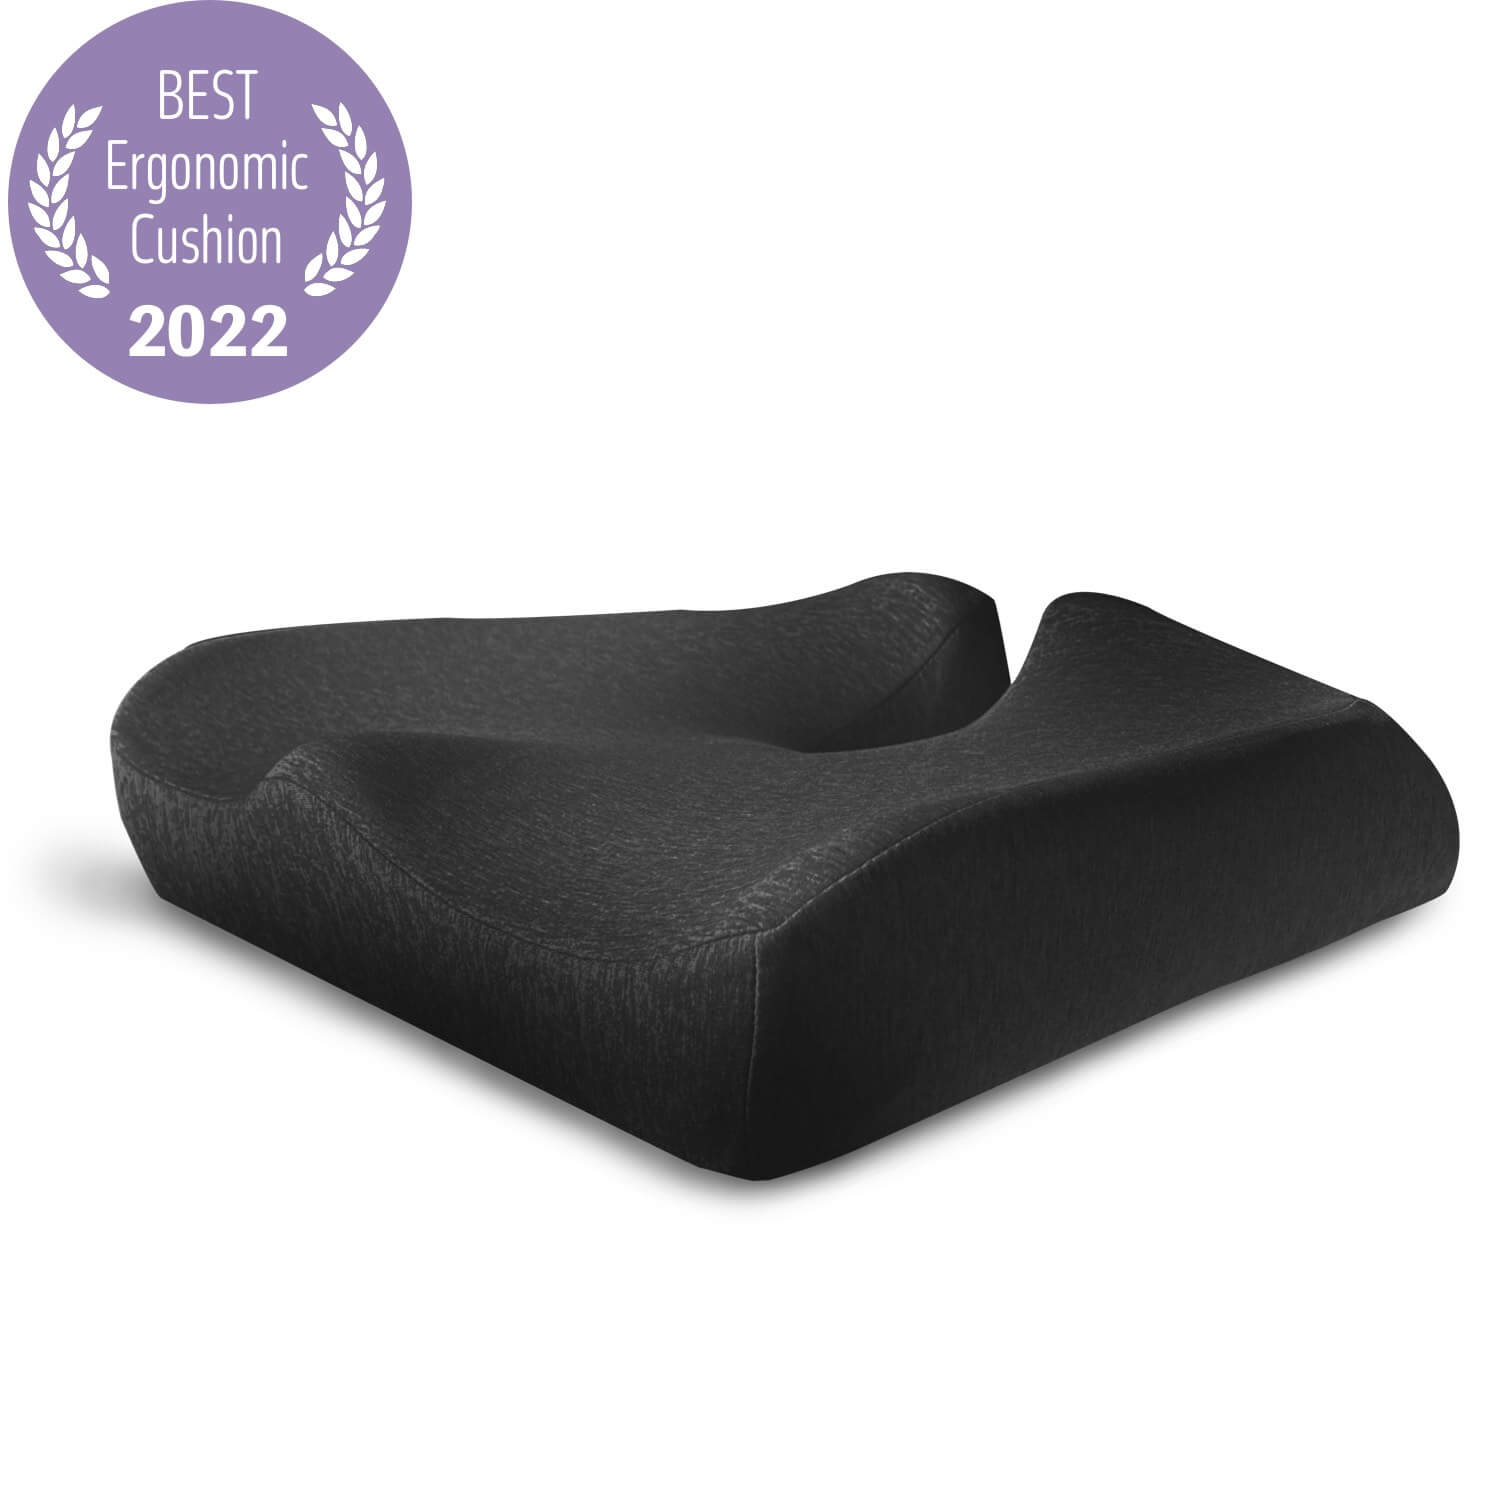 Best Memory Foam Seat Cushions in 2022 